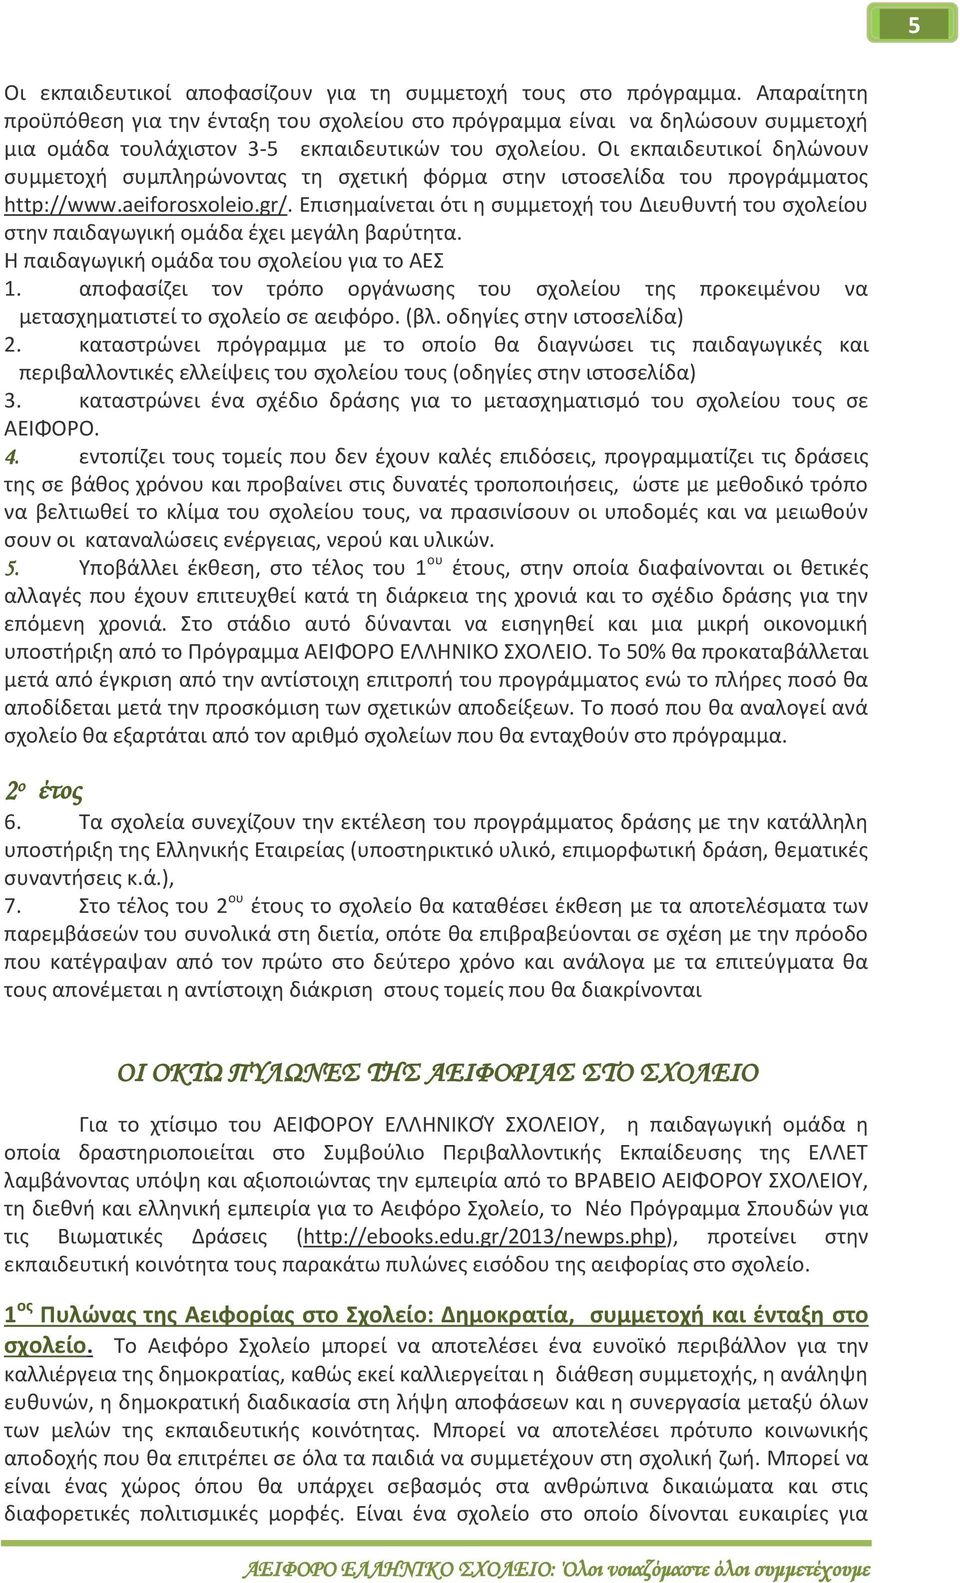 Οι εκπαιδευτικοί δηλώνουν συμμετοχή συμπληρώνοντας τη σχετική φόρμα στην ιστοσελίδα του προγράμματος http://www.aeiforosxoleio.gr/.